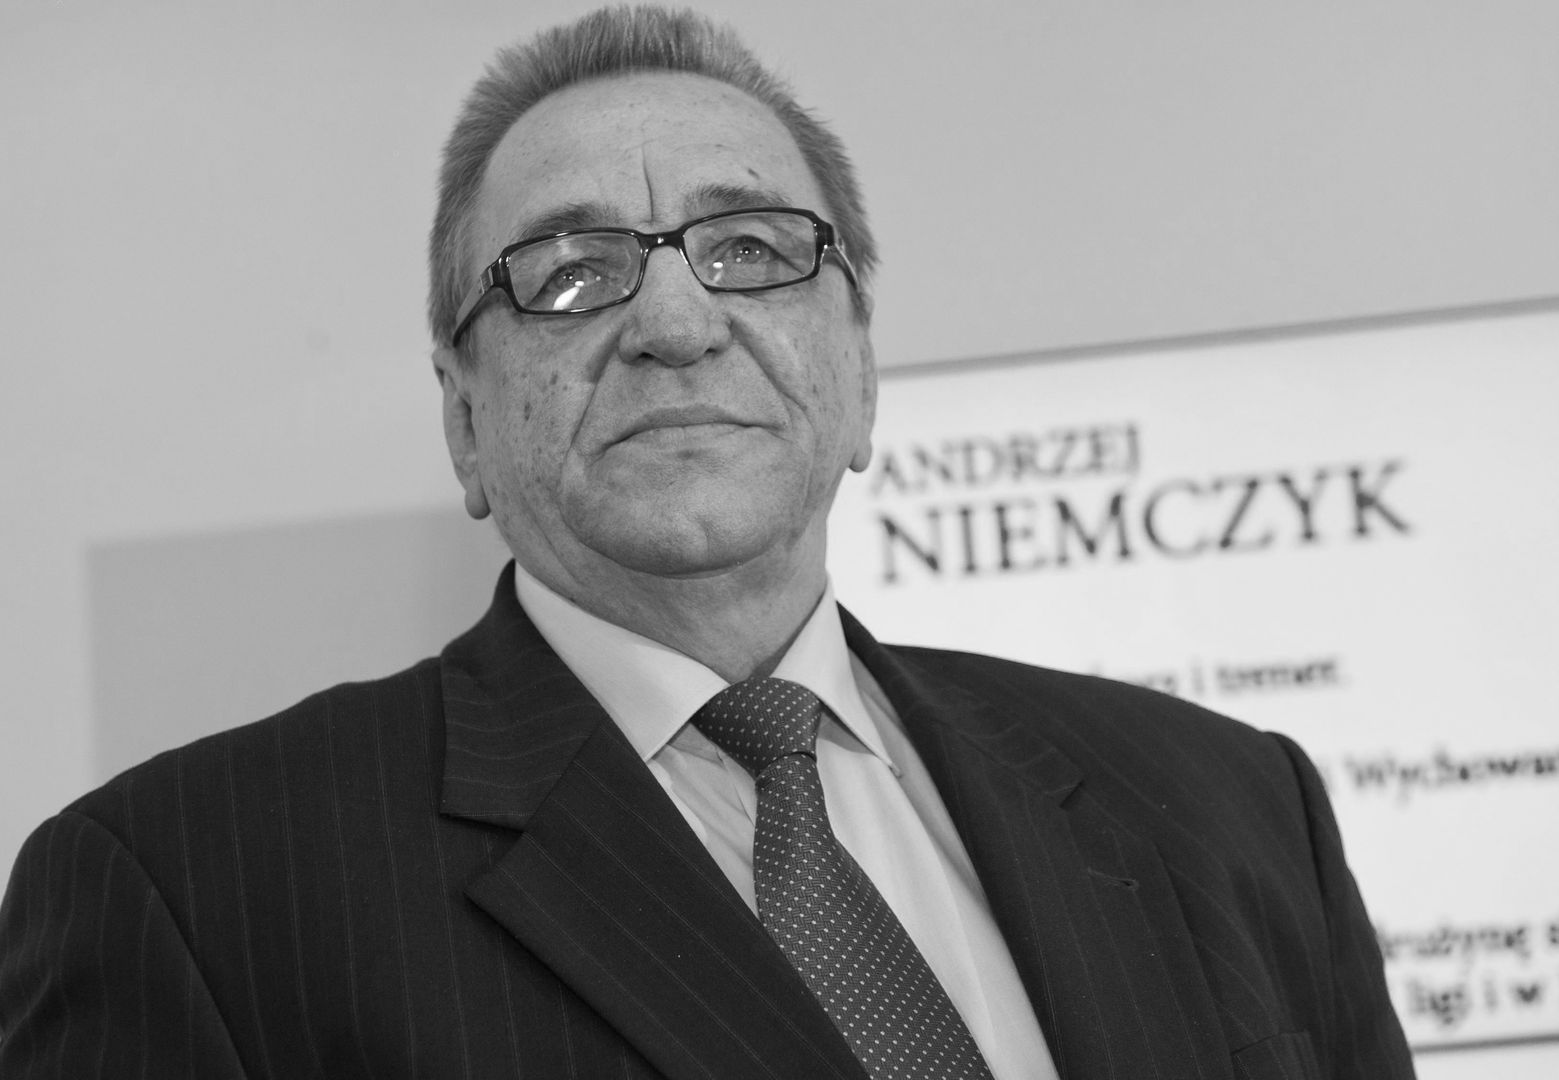 Zmarł Andrzej Niemczyk. Miał 72 lata